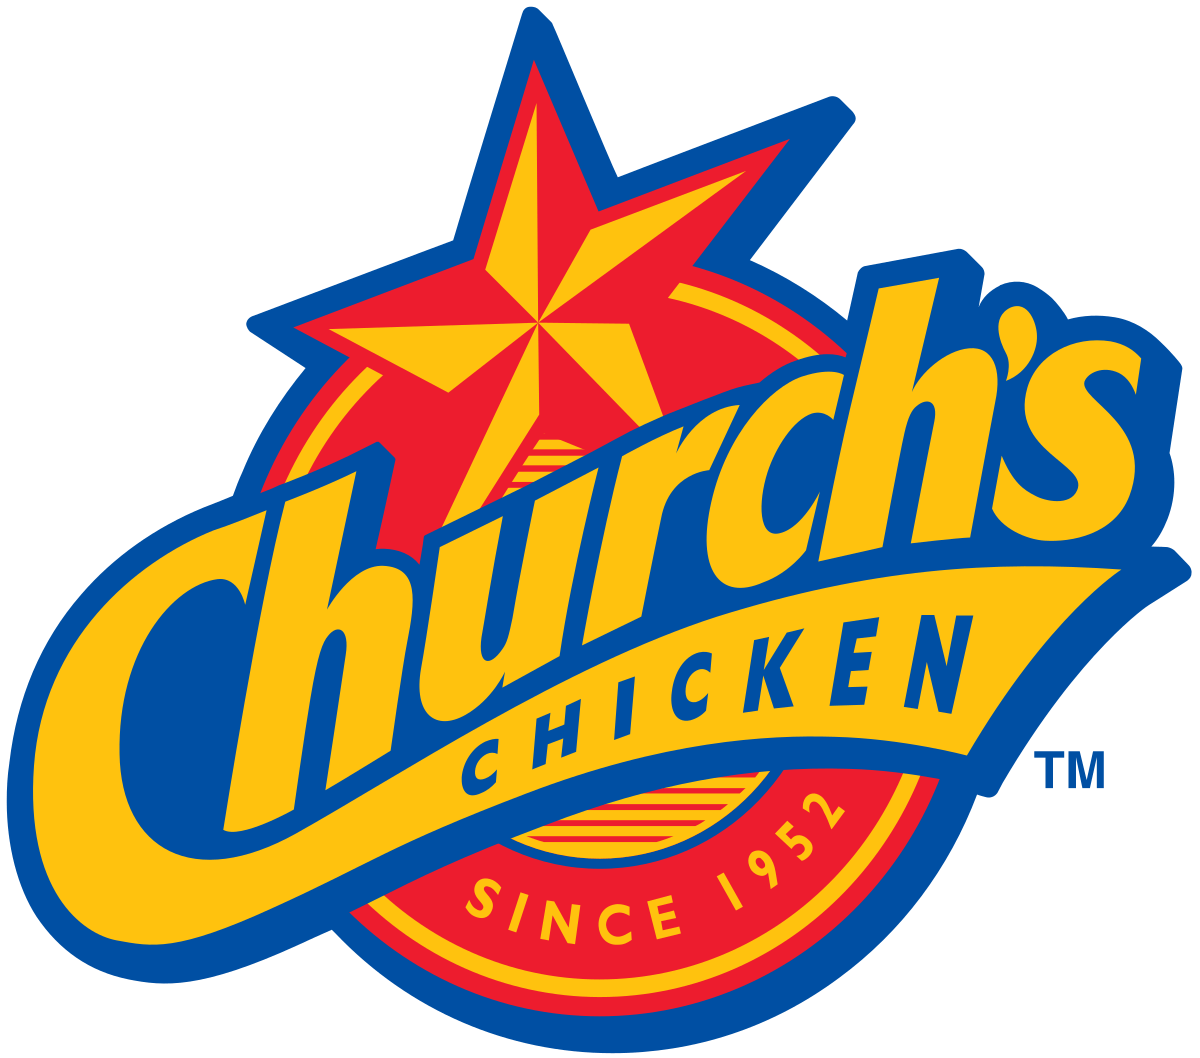 Orange Chicken Logo - Church's Chicken